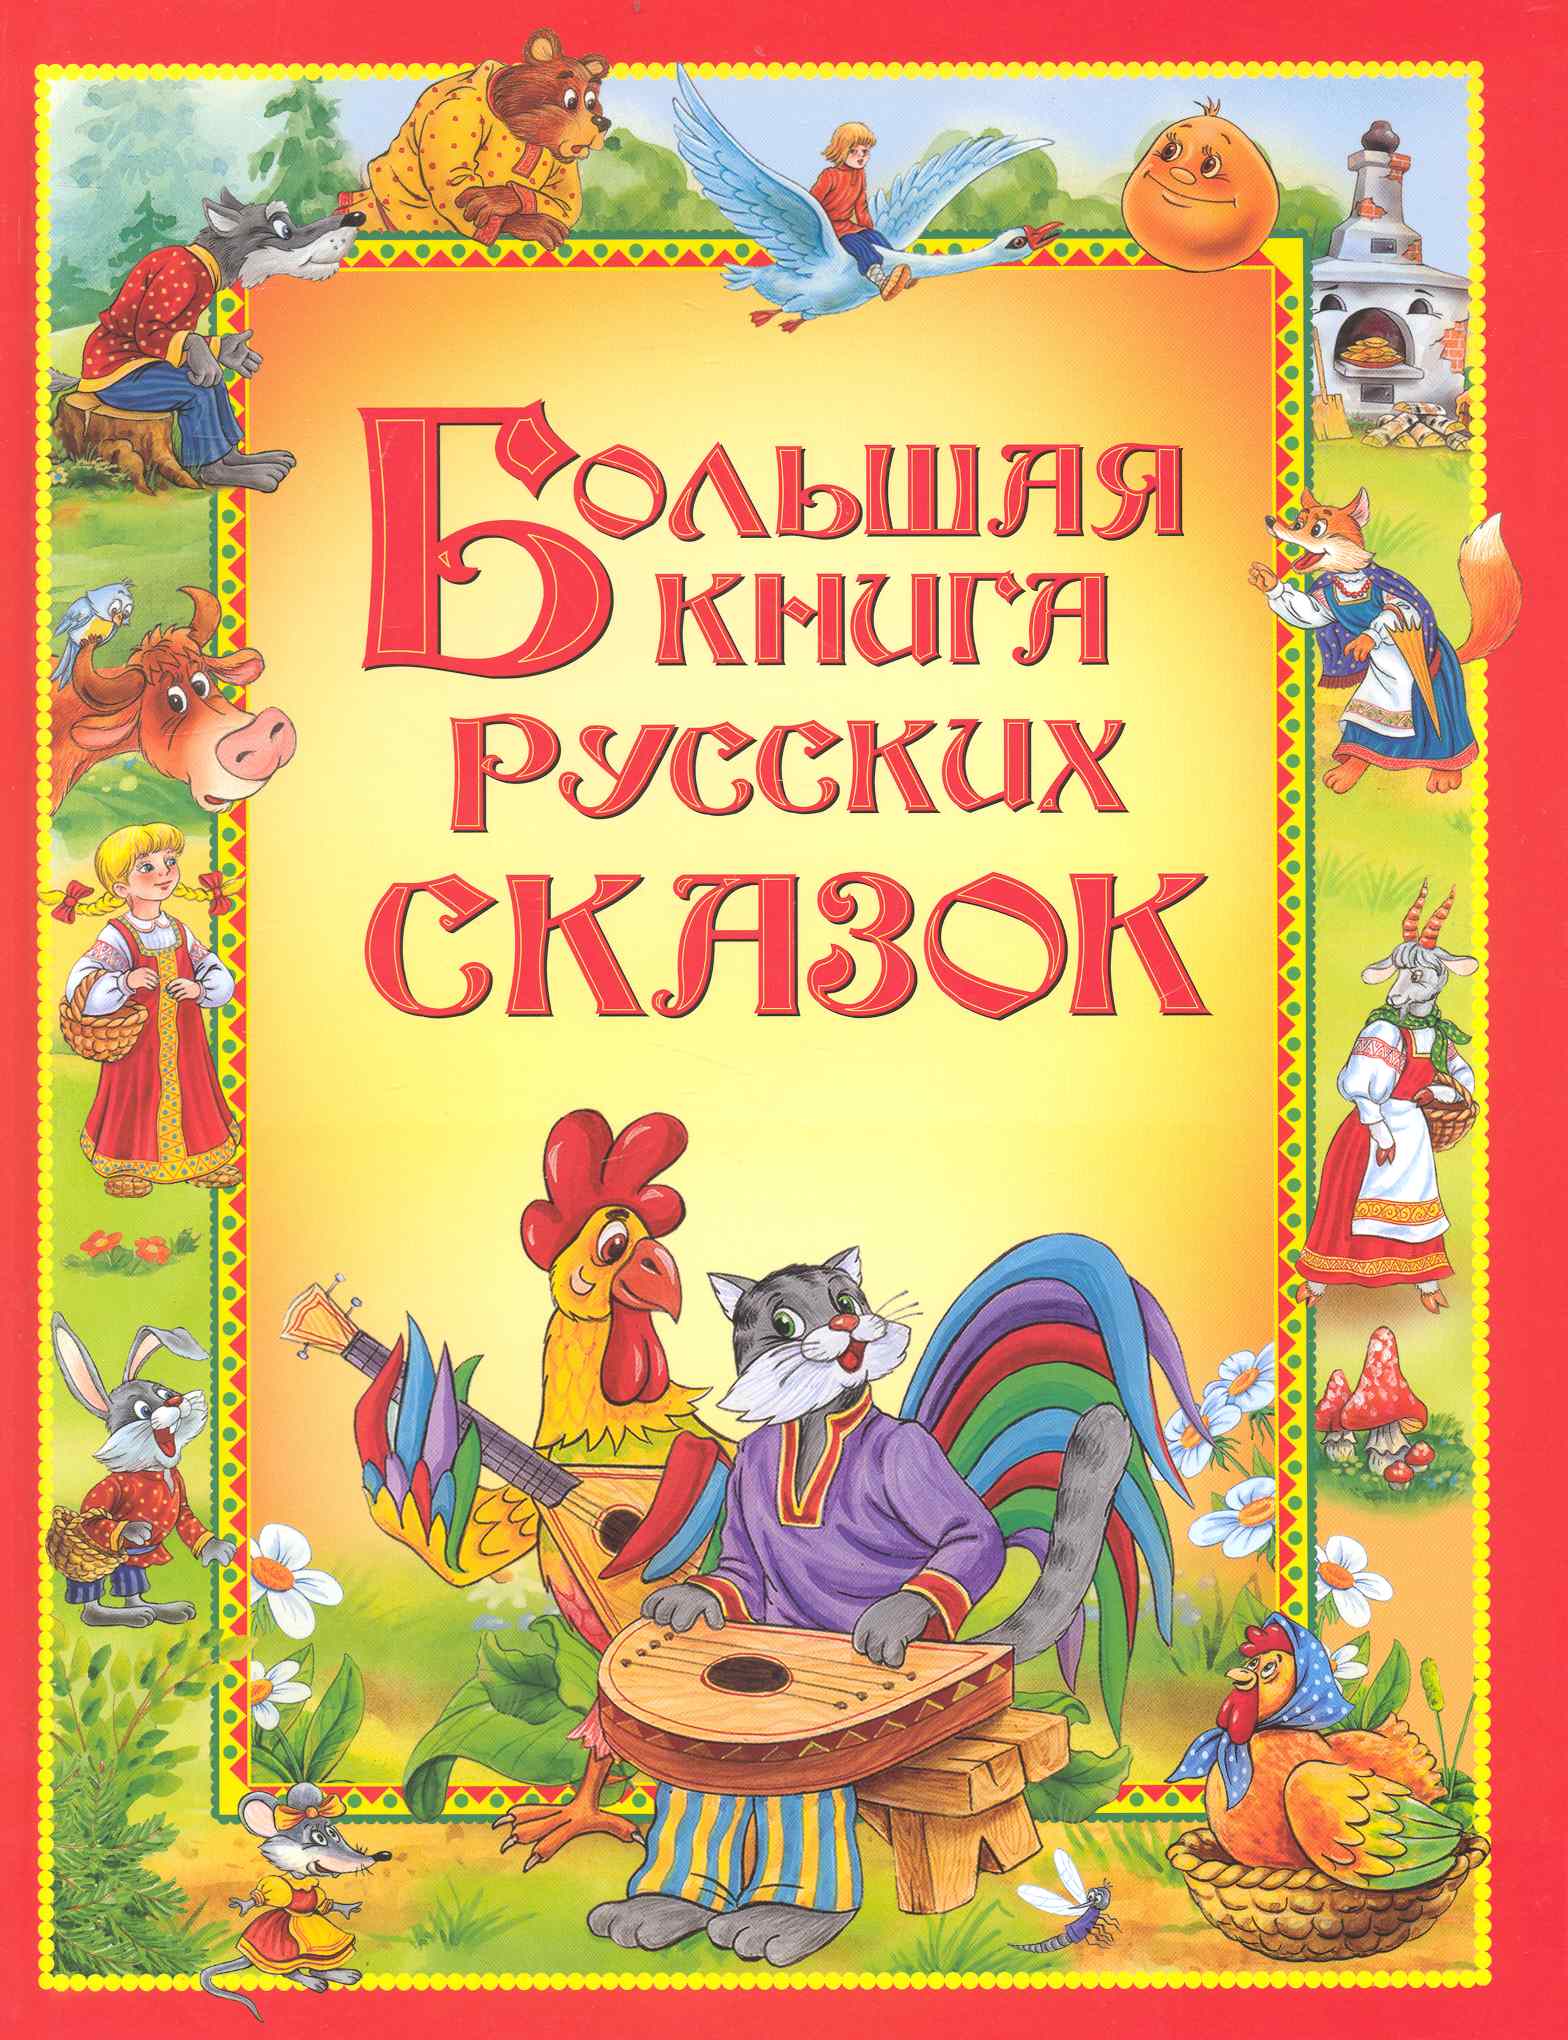 Большая книга русских сказок.